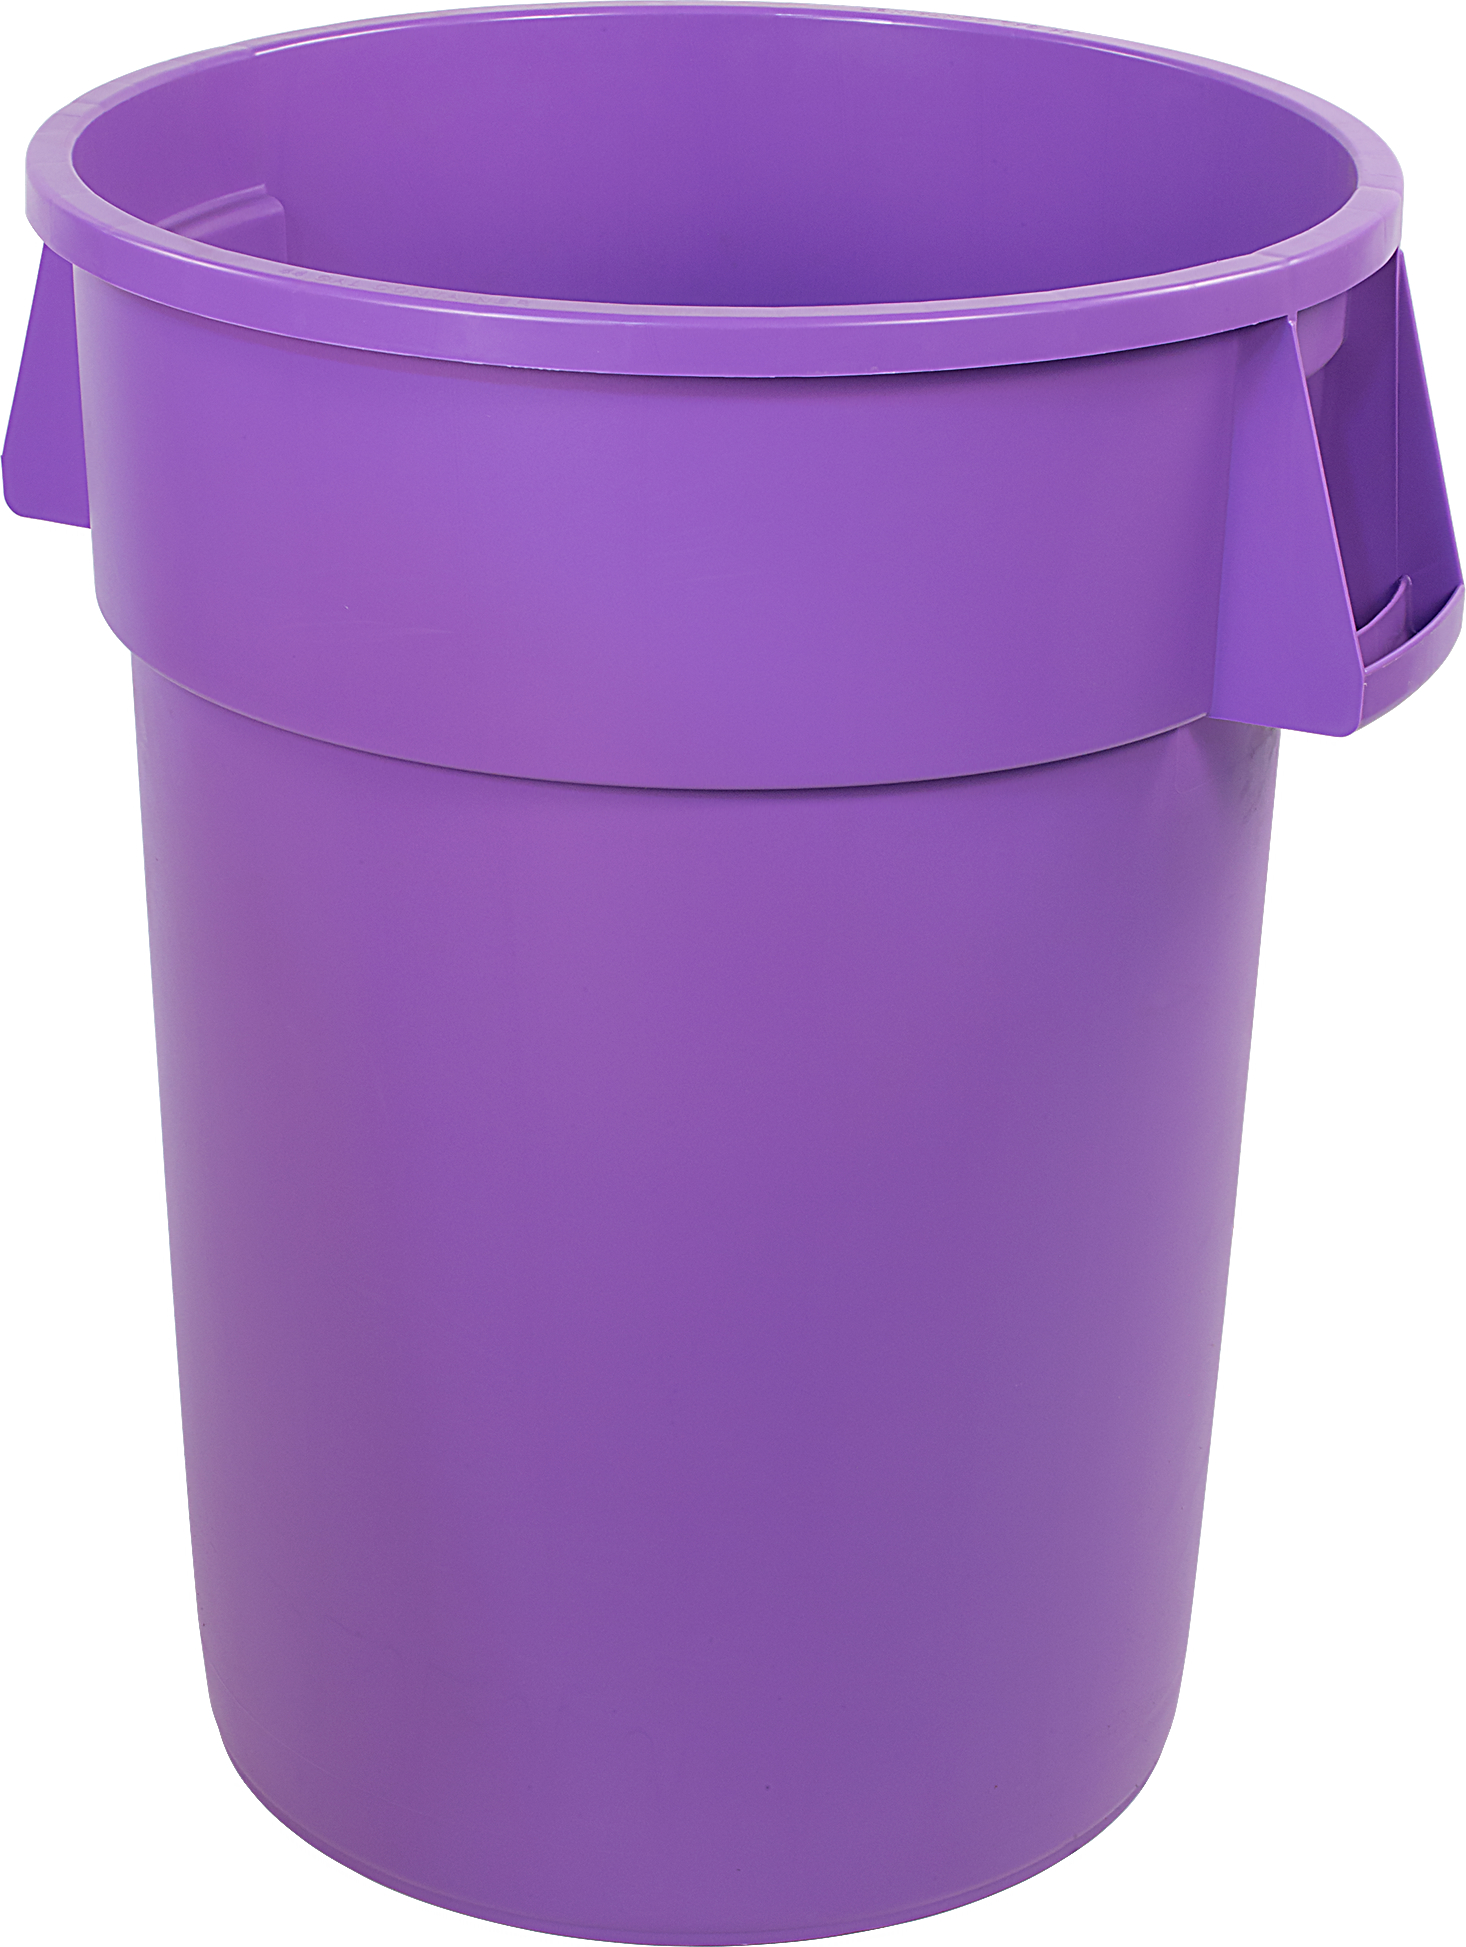 Bronco Round Waste Bin Trash Container 55 Gallon - Purple